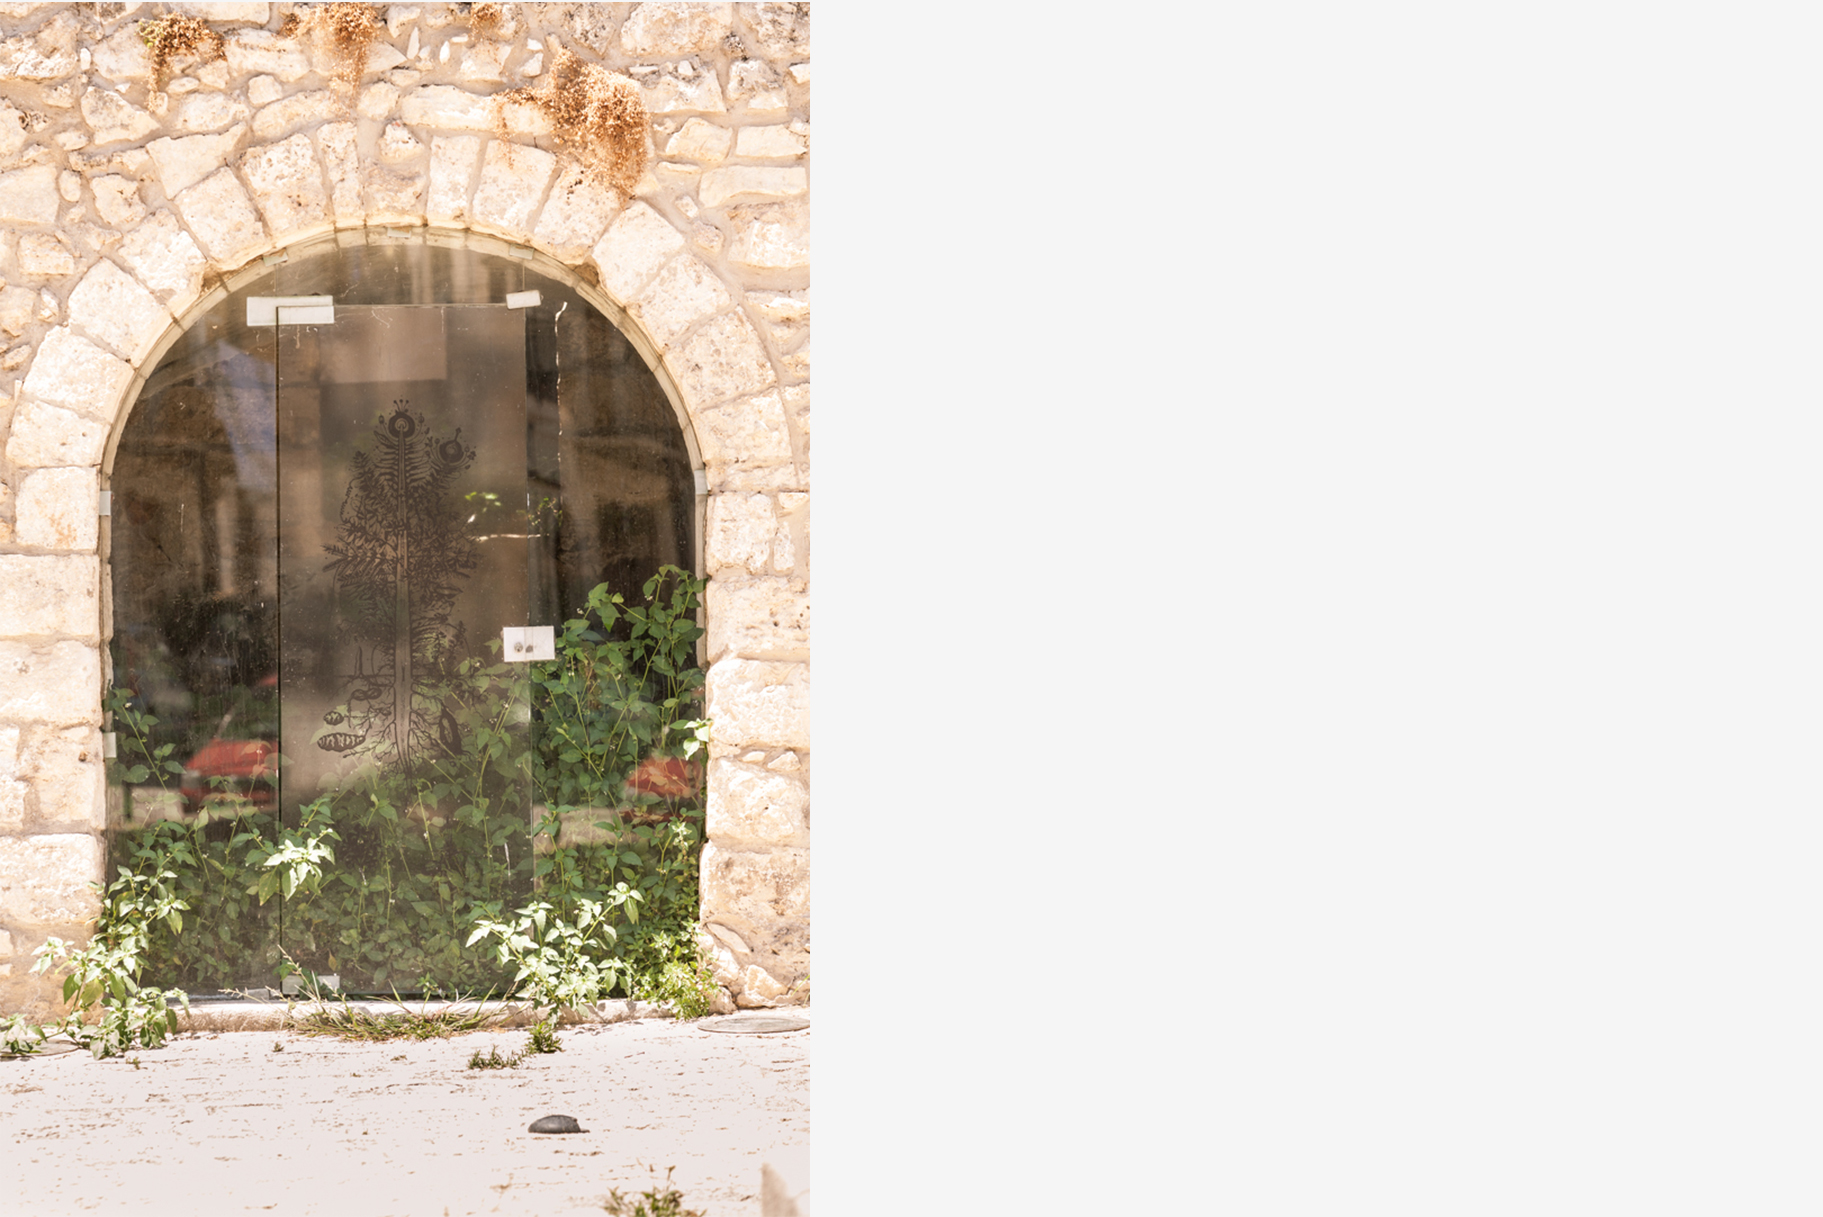 Leonardo Petrucci, Urpflanze, 2018, vinile adesivo trasparente su vetro, Fontana Araba, Alcamo. Foto CAVE Studio